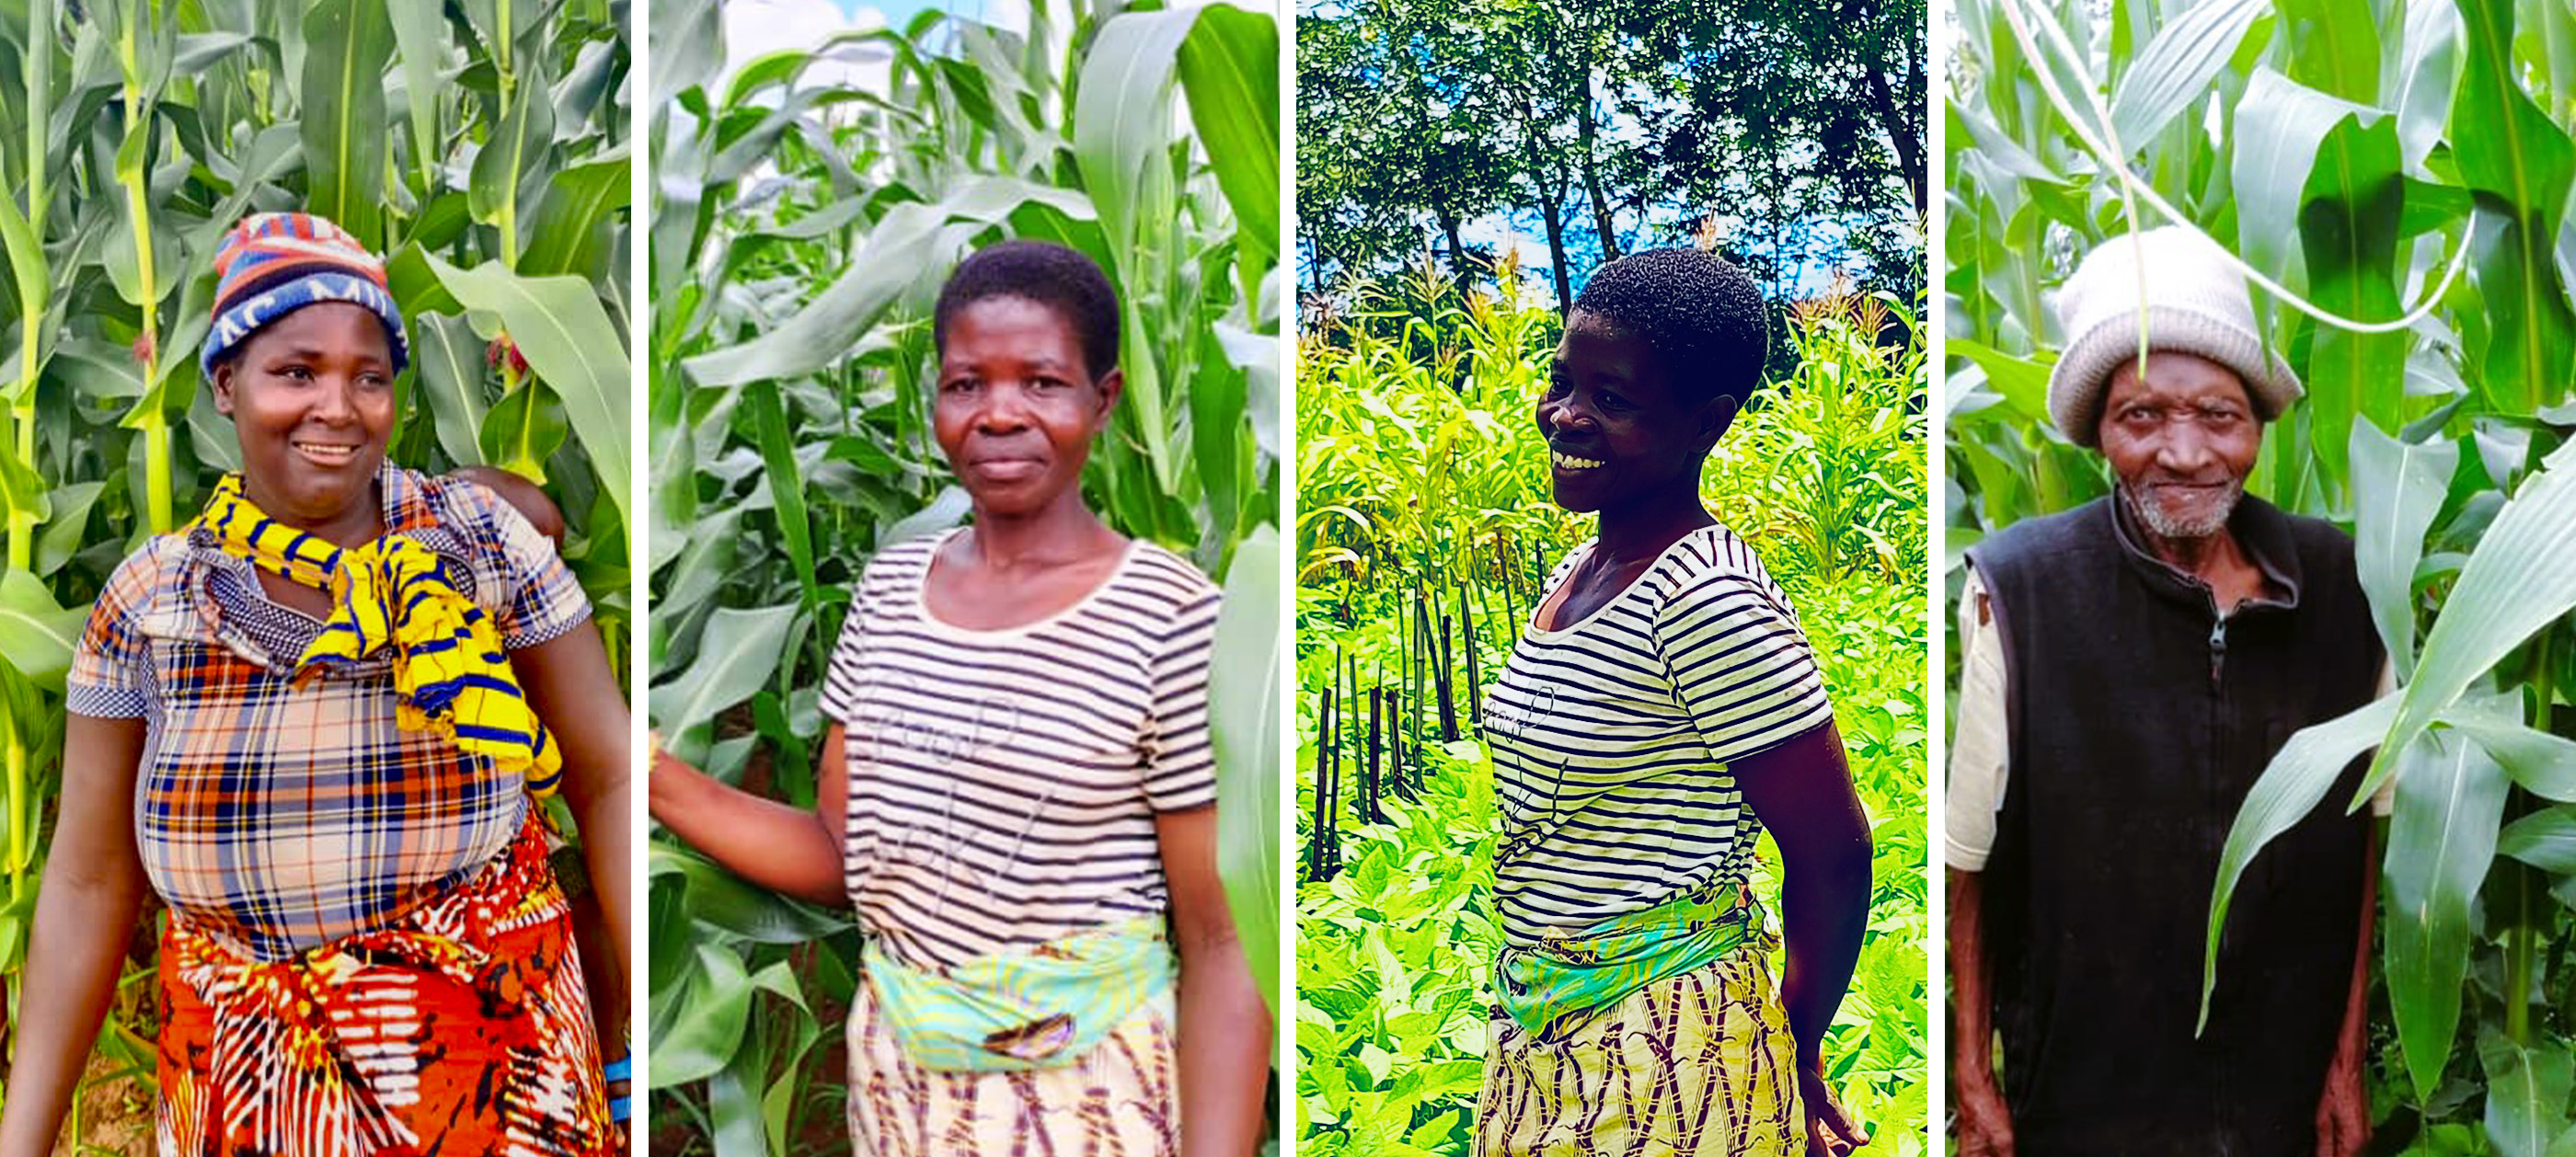 マラウイへの農業教育支援レポート 2021-2022 第2弾 豊かな未来につなげるストーリー